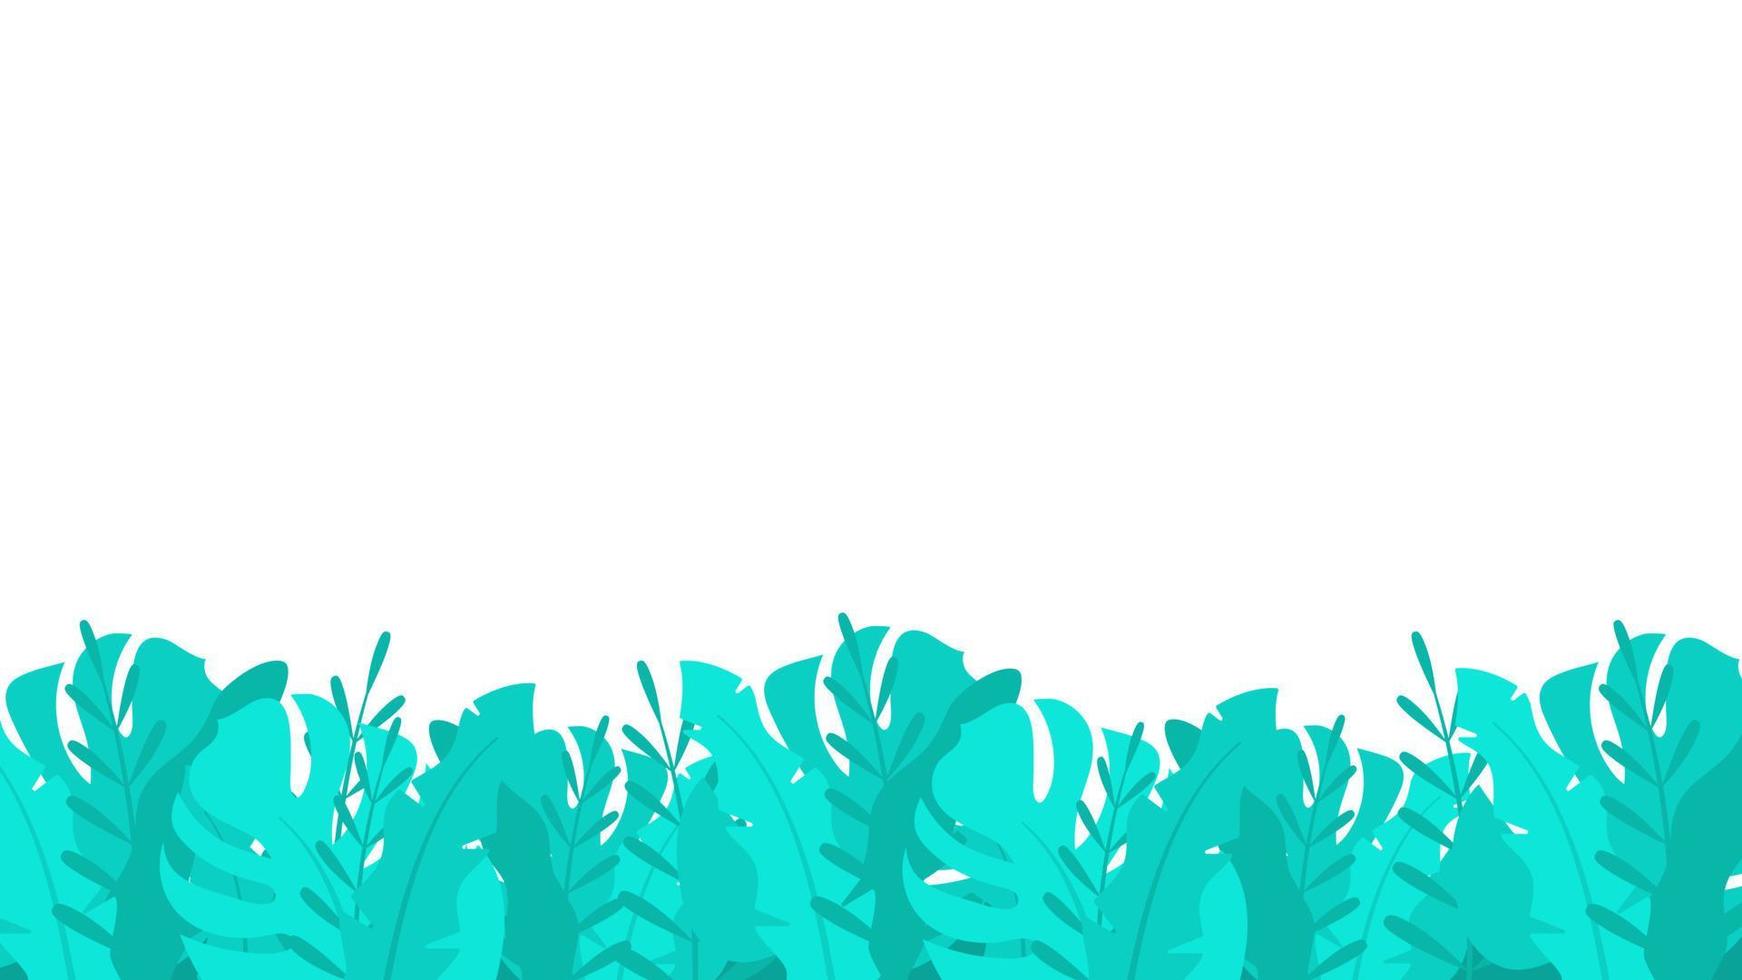 fond de plantes de fourrés tropicaux. feuilles luxuriantes turquoise avec une végétation lumineuse impénétrable. bannière de paysage horizontal naturel avec buisson de vecteur sauvage